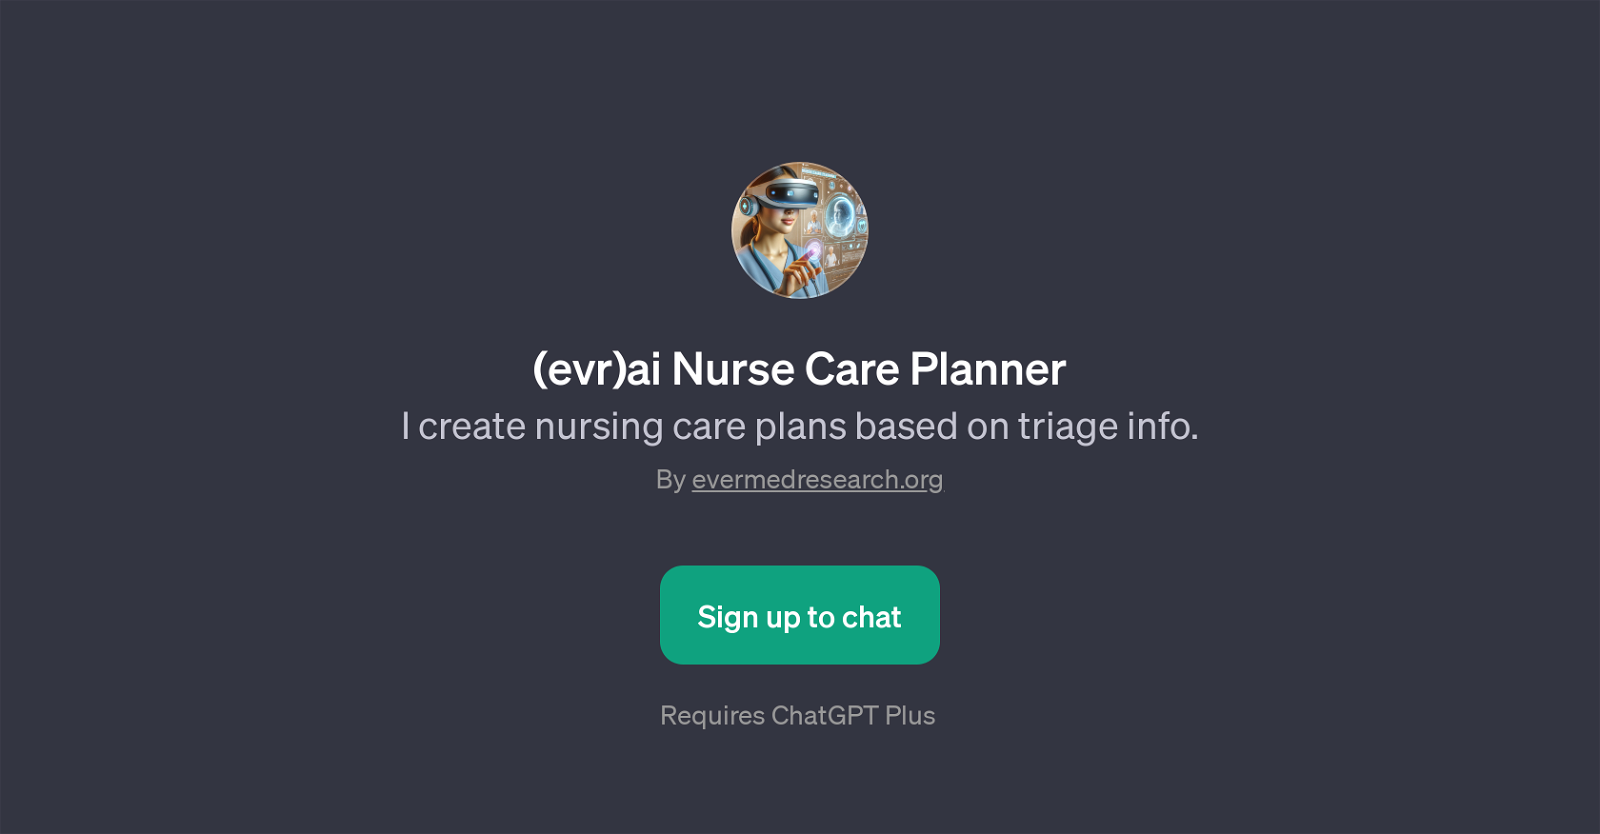 (evr)ai Nurse Care Planner website